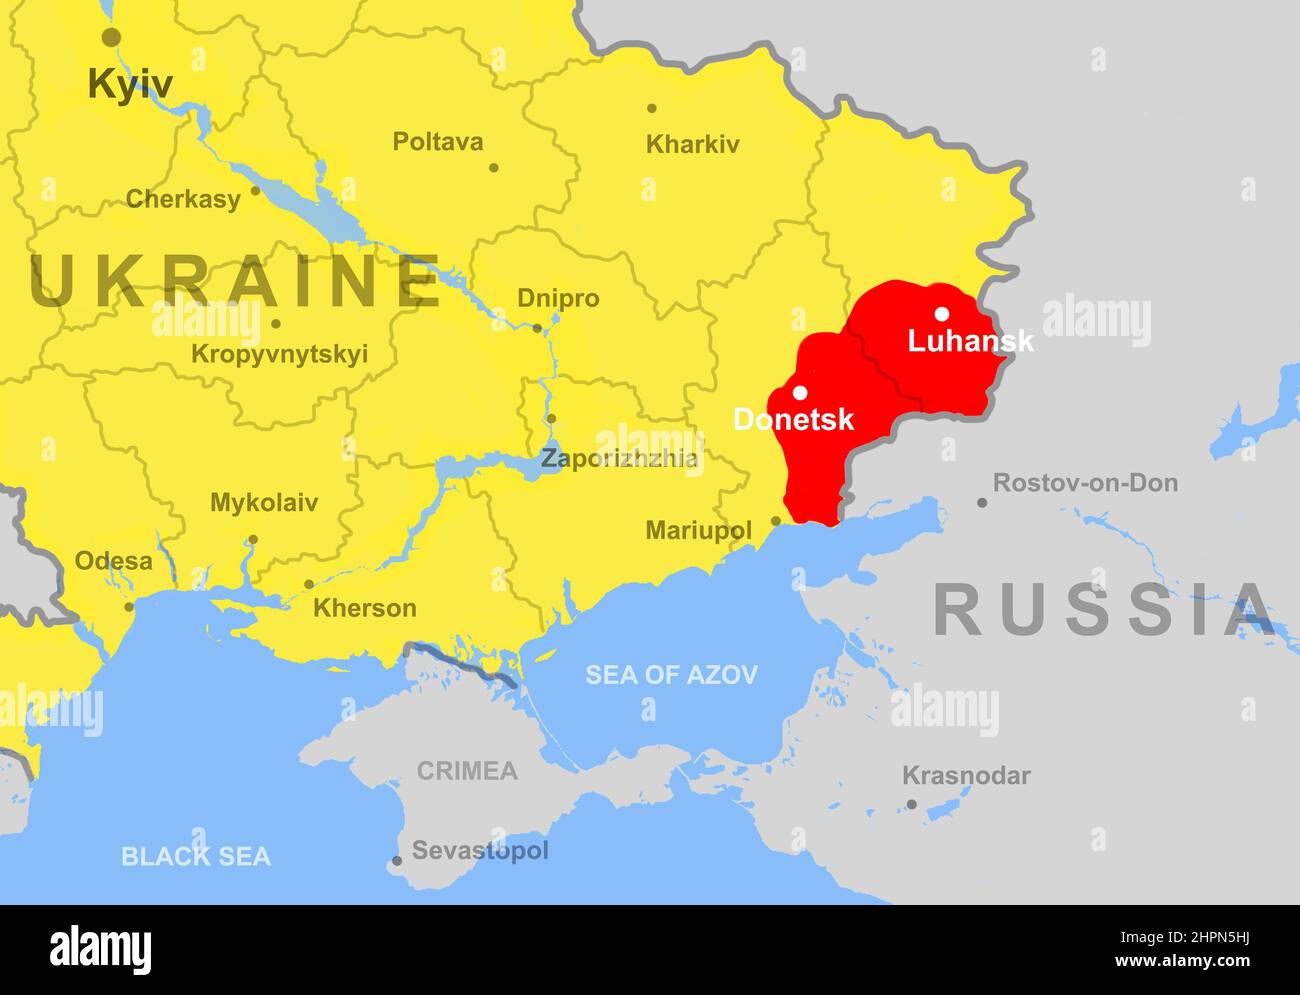 L'Ukraine sur la carte de l'Europe, les régions de Donetsk et de Luhansk (Donbass). Carte politique avec la frontière russe, la Crimée, la mer Noire et la mer d'Azov. Concept d'Ukrain Banque D'Images